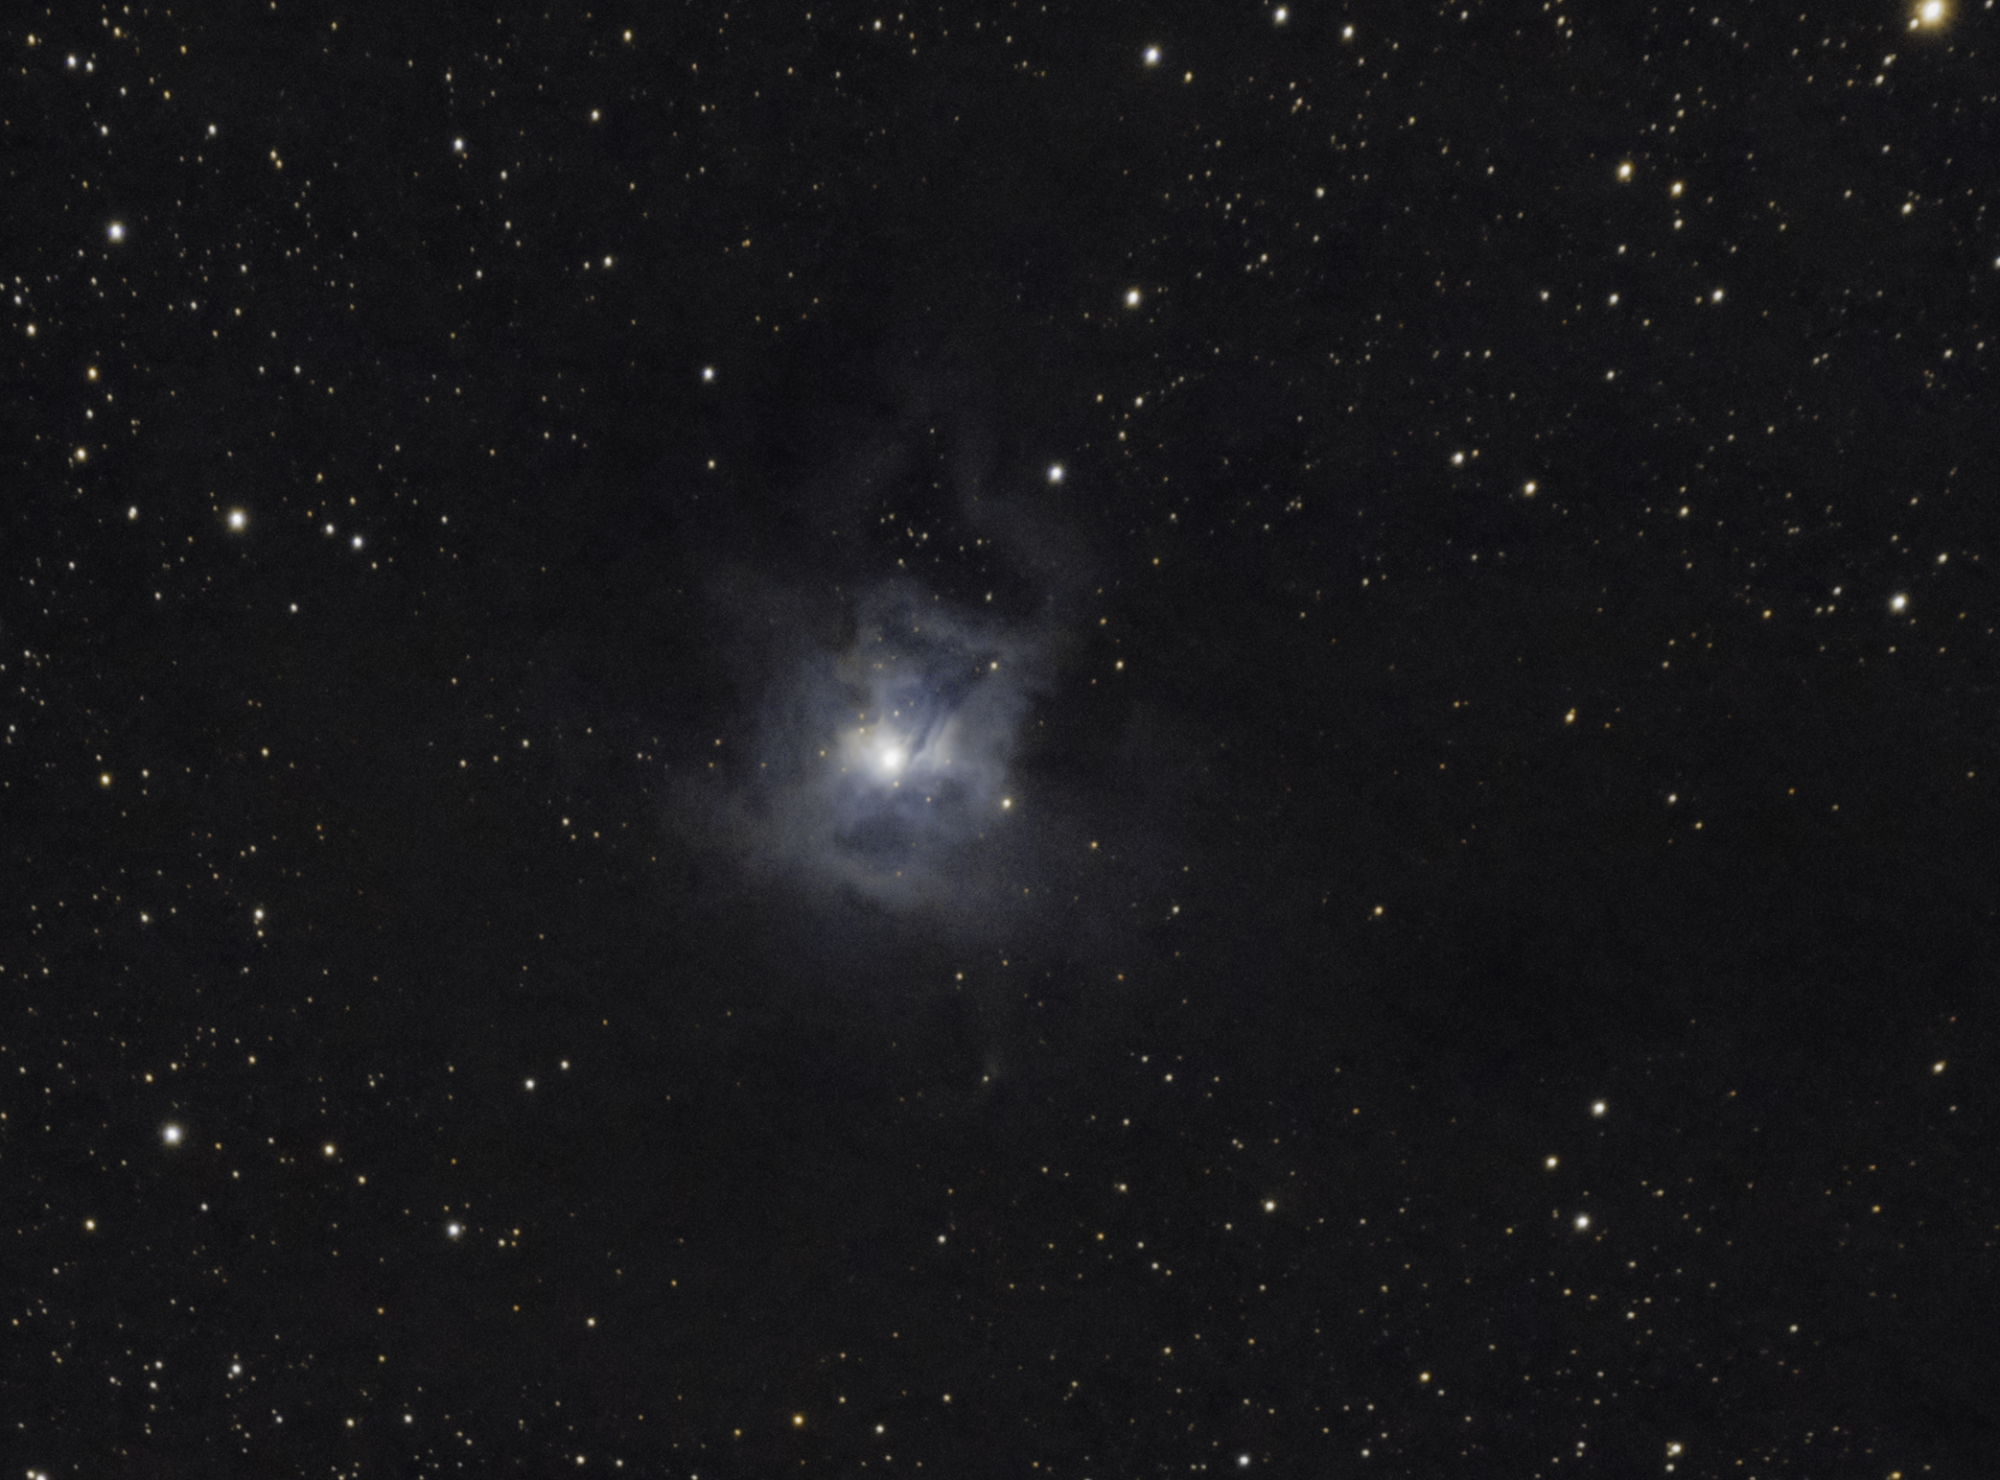 5f1c28a39b52f_NGC7023Crop.thumb.png.ad001079163c0845a49c8538ee3bb73f.png